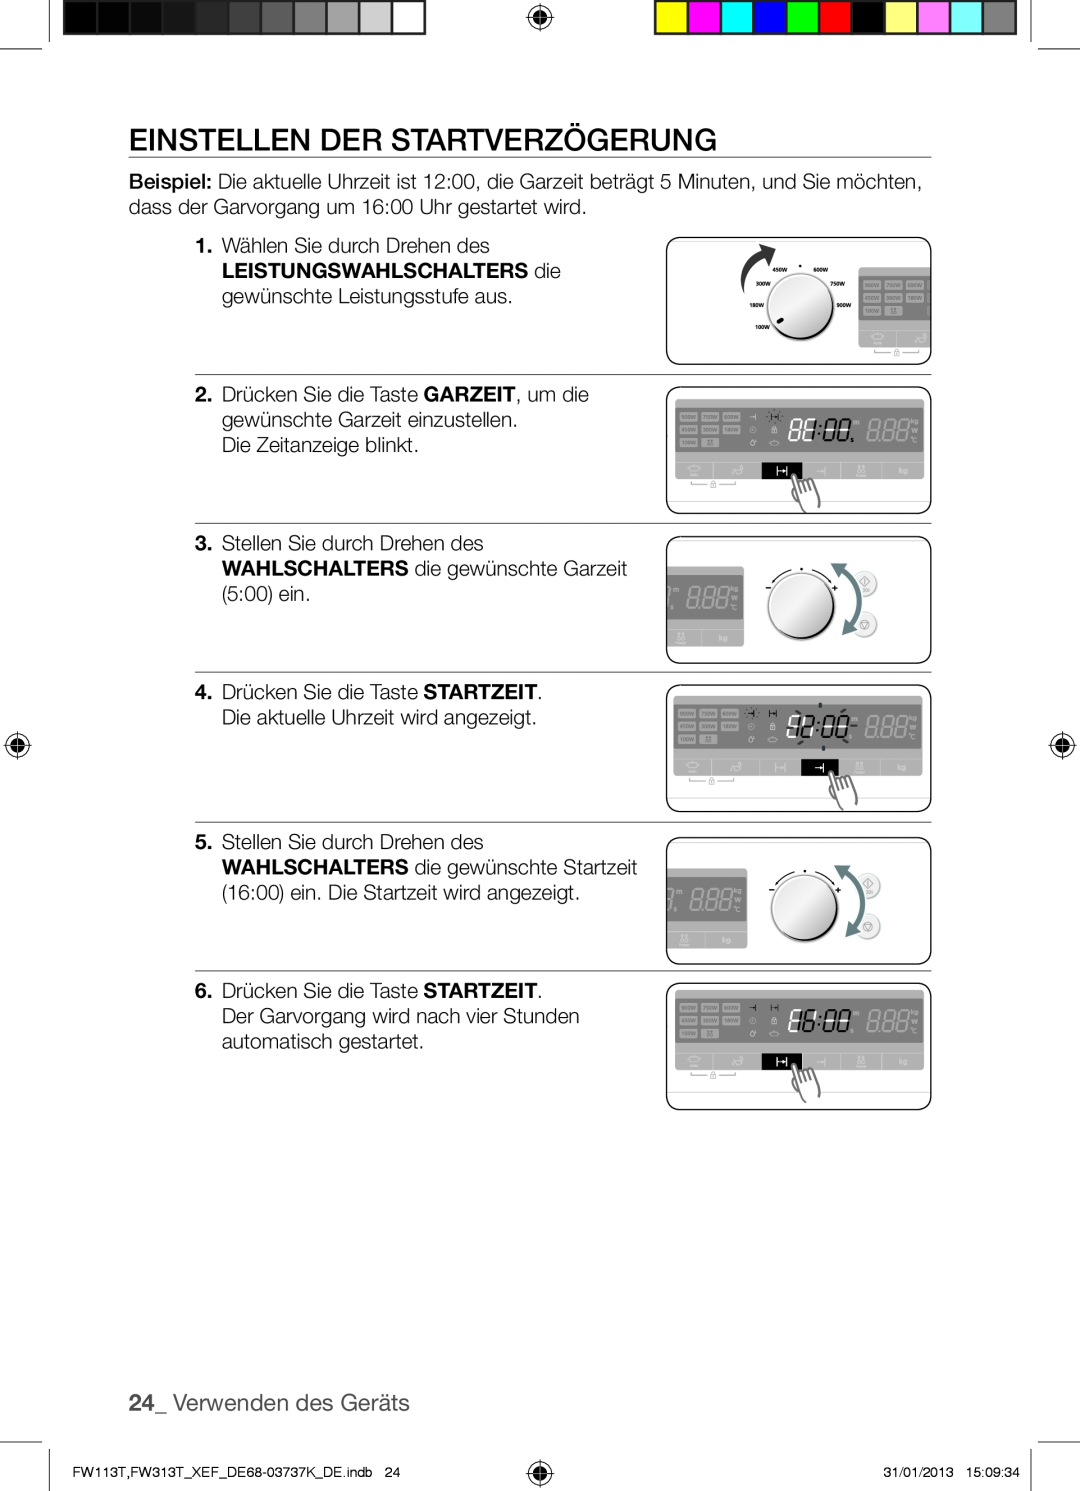 Samsung FW113T002/XEF manual Einstellen Der Startverzögerung, Verwenden des Geräts 